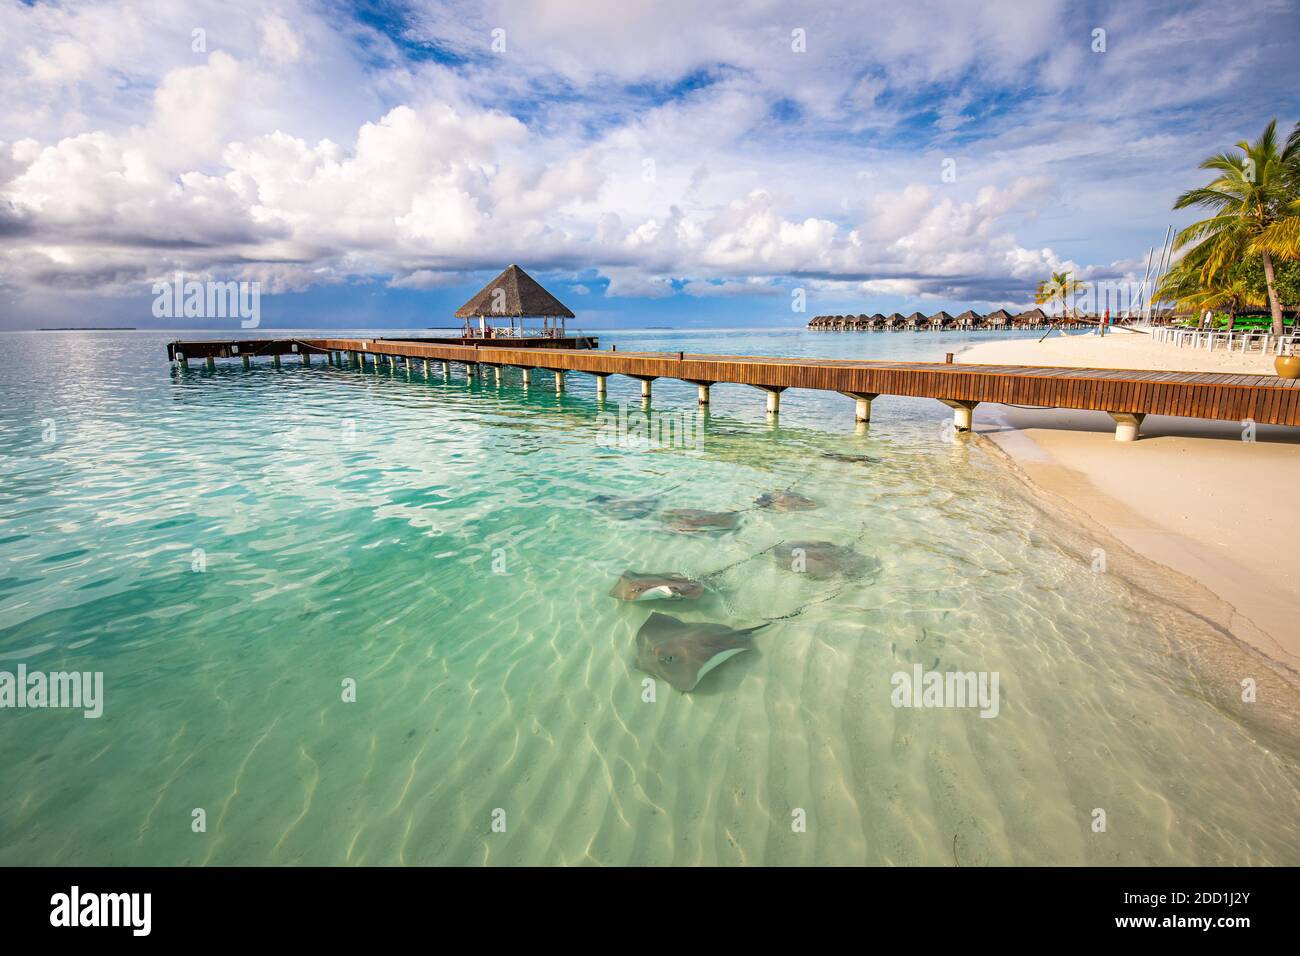 Fantastische Strandlandschaft mit Stachelrochen und Haien in der grünen blauen Lagune im luxuriösen Inselresorthotel, Malediven Strandleben. Tropisches Paradies Stockfoto